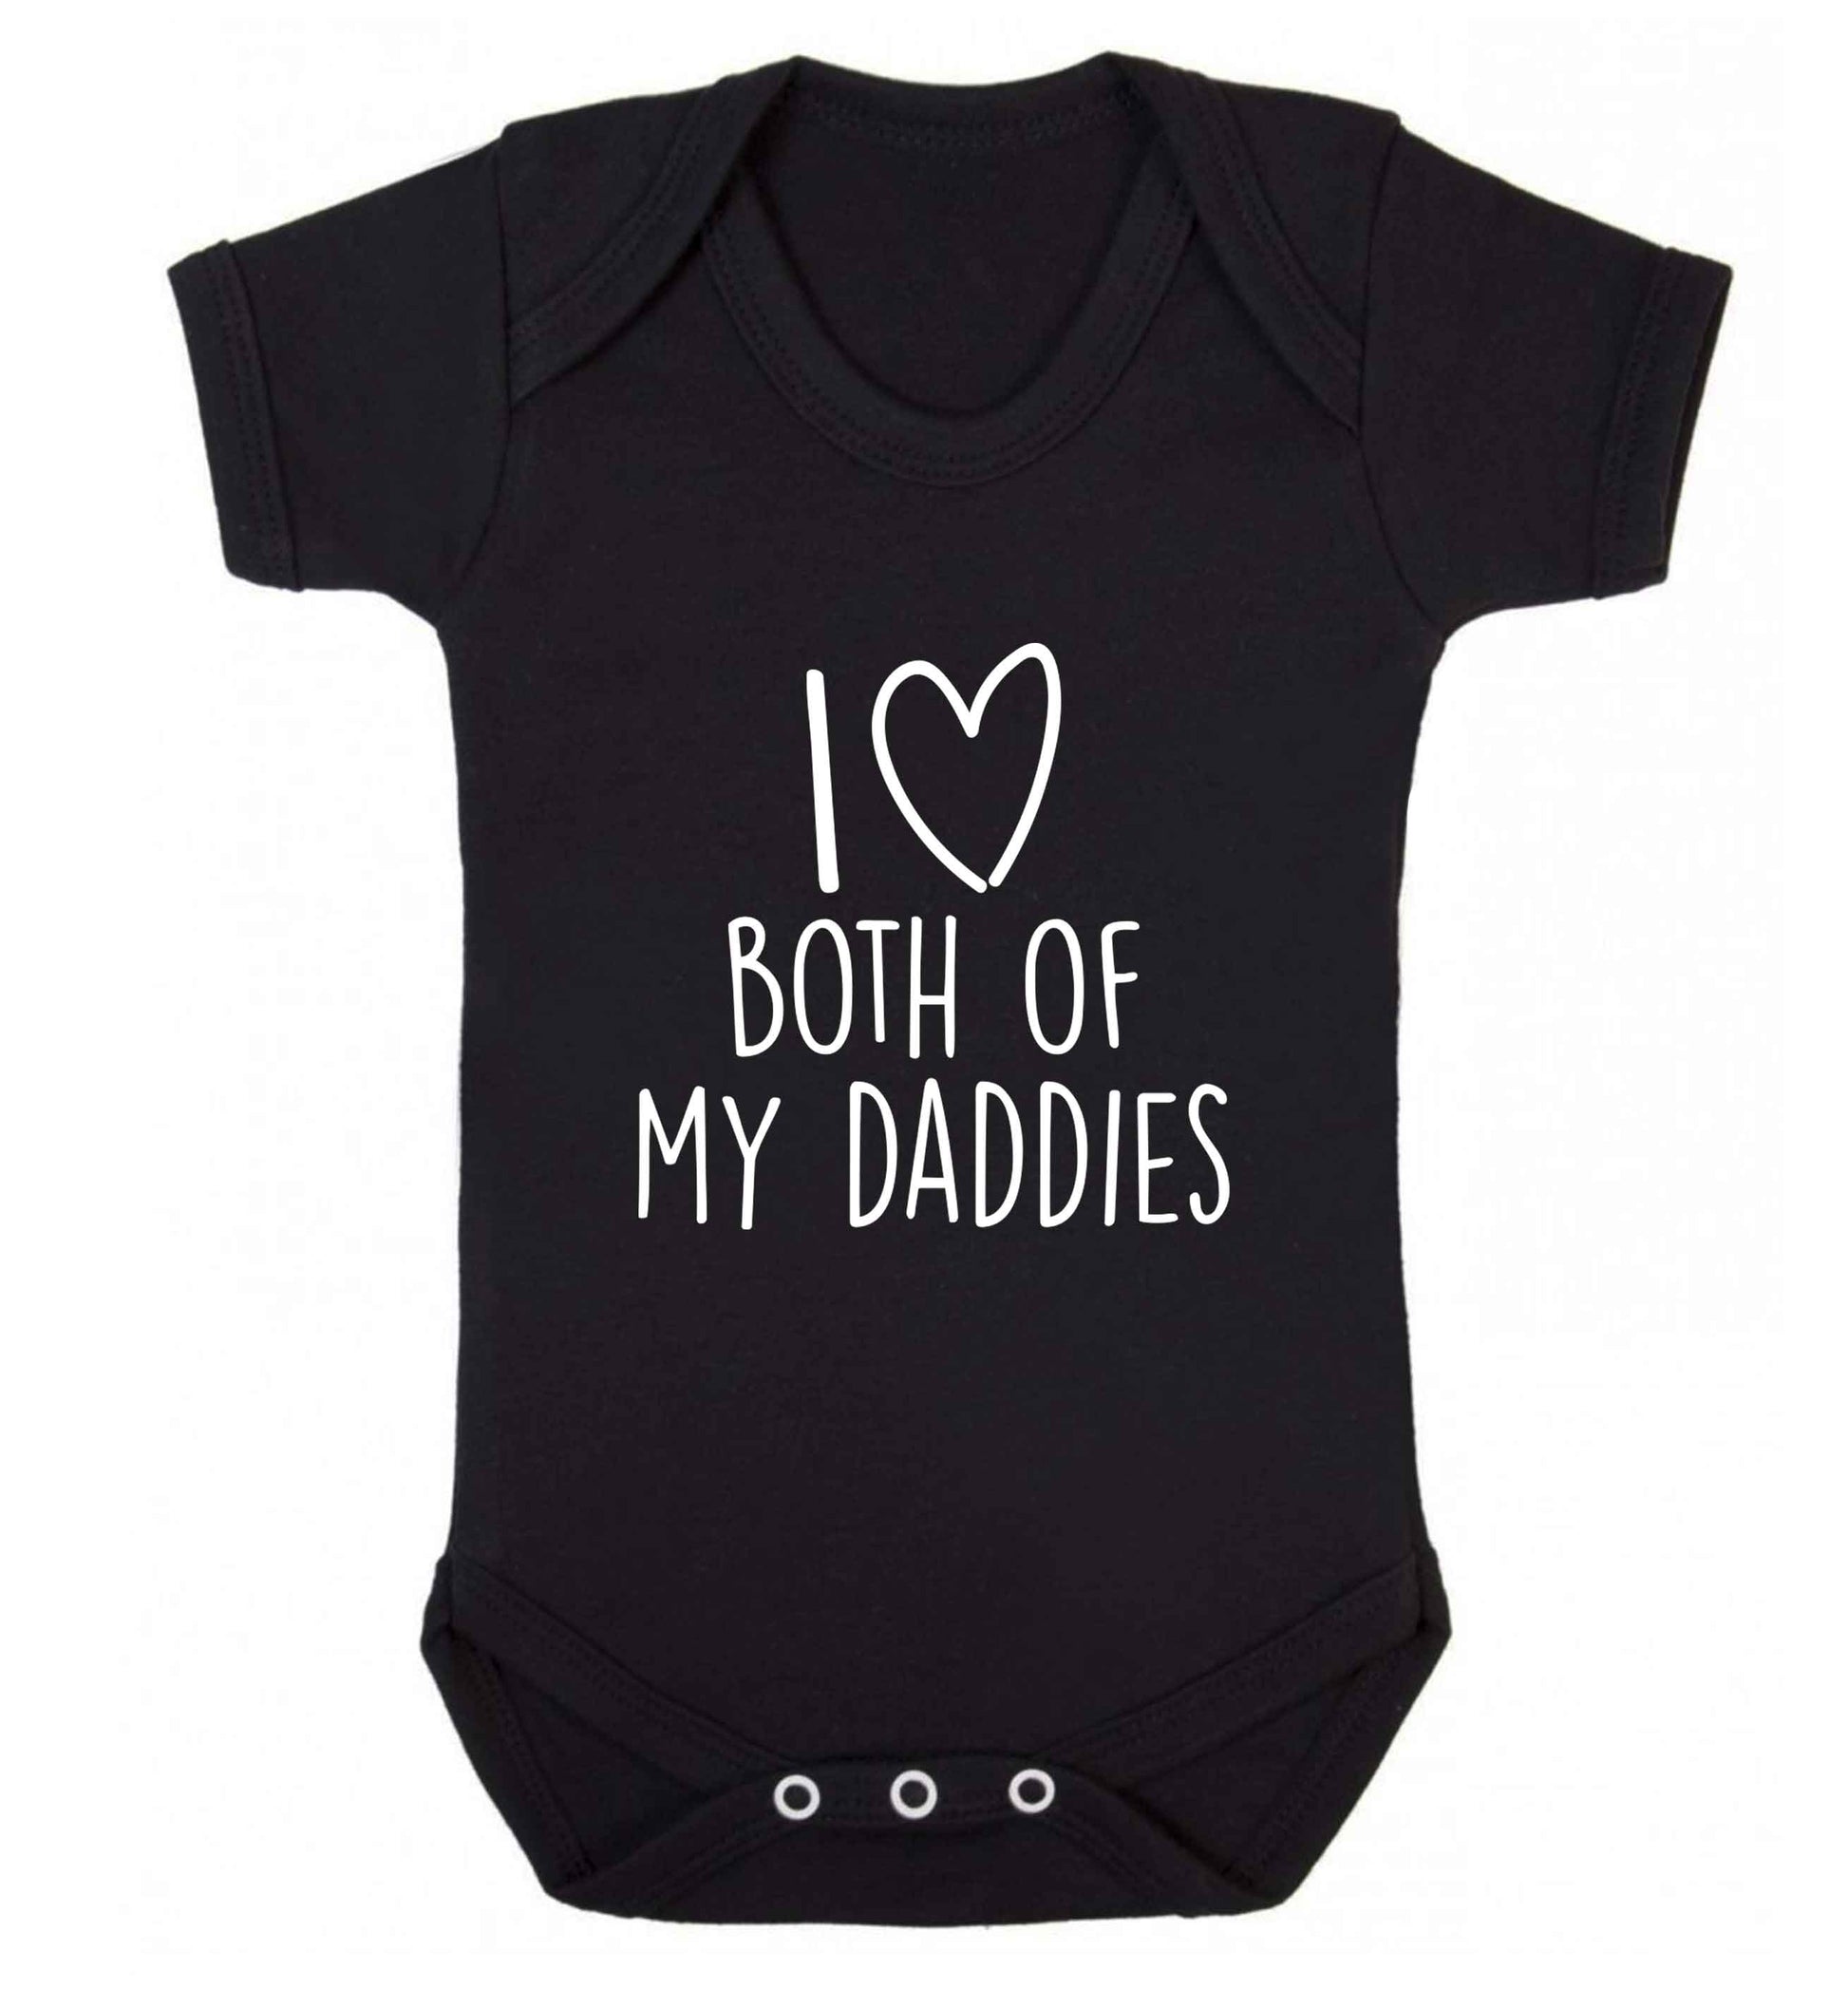 I love both of my daddies baby vest black 18-24 months